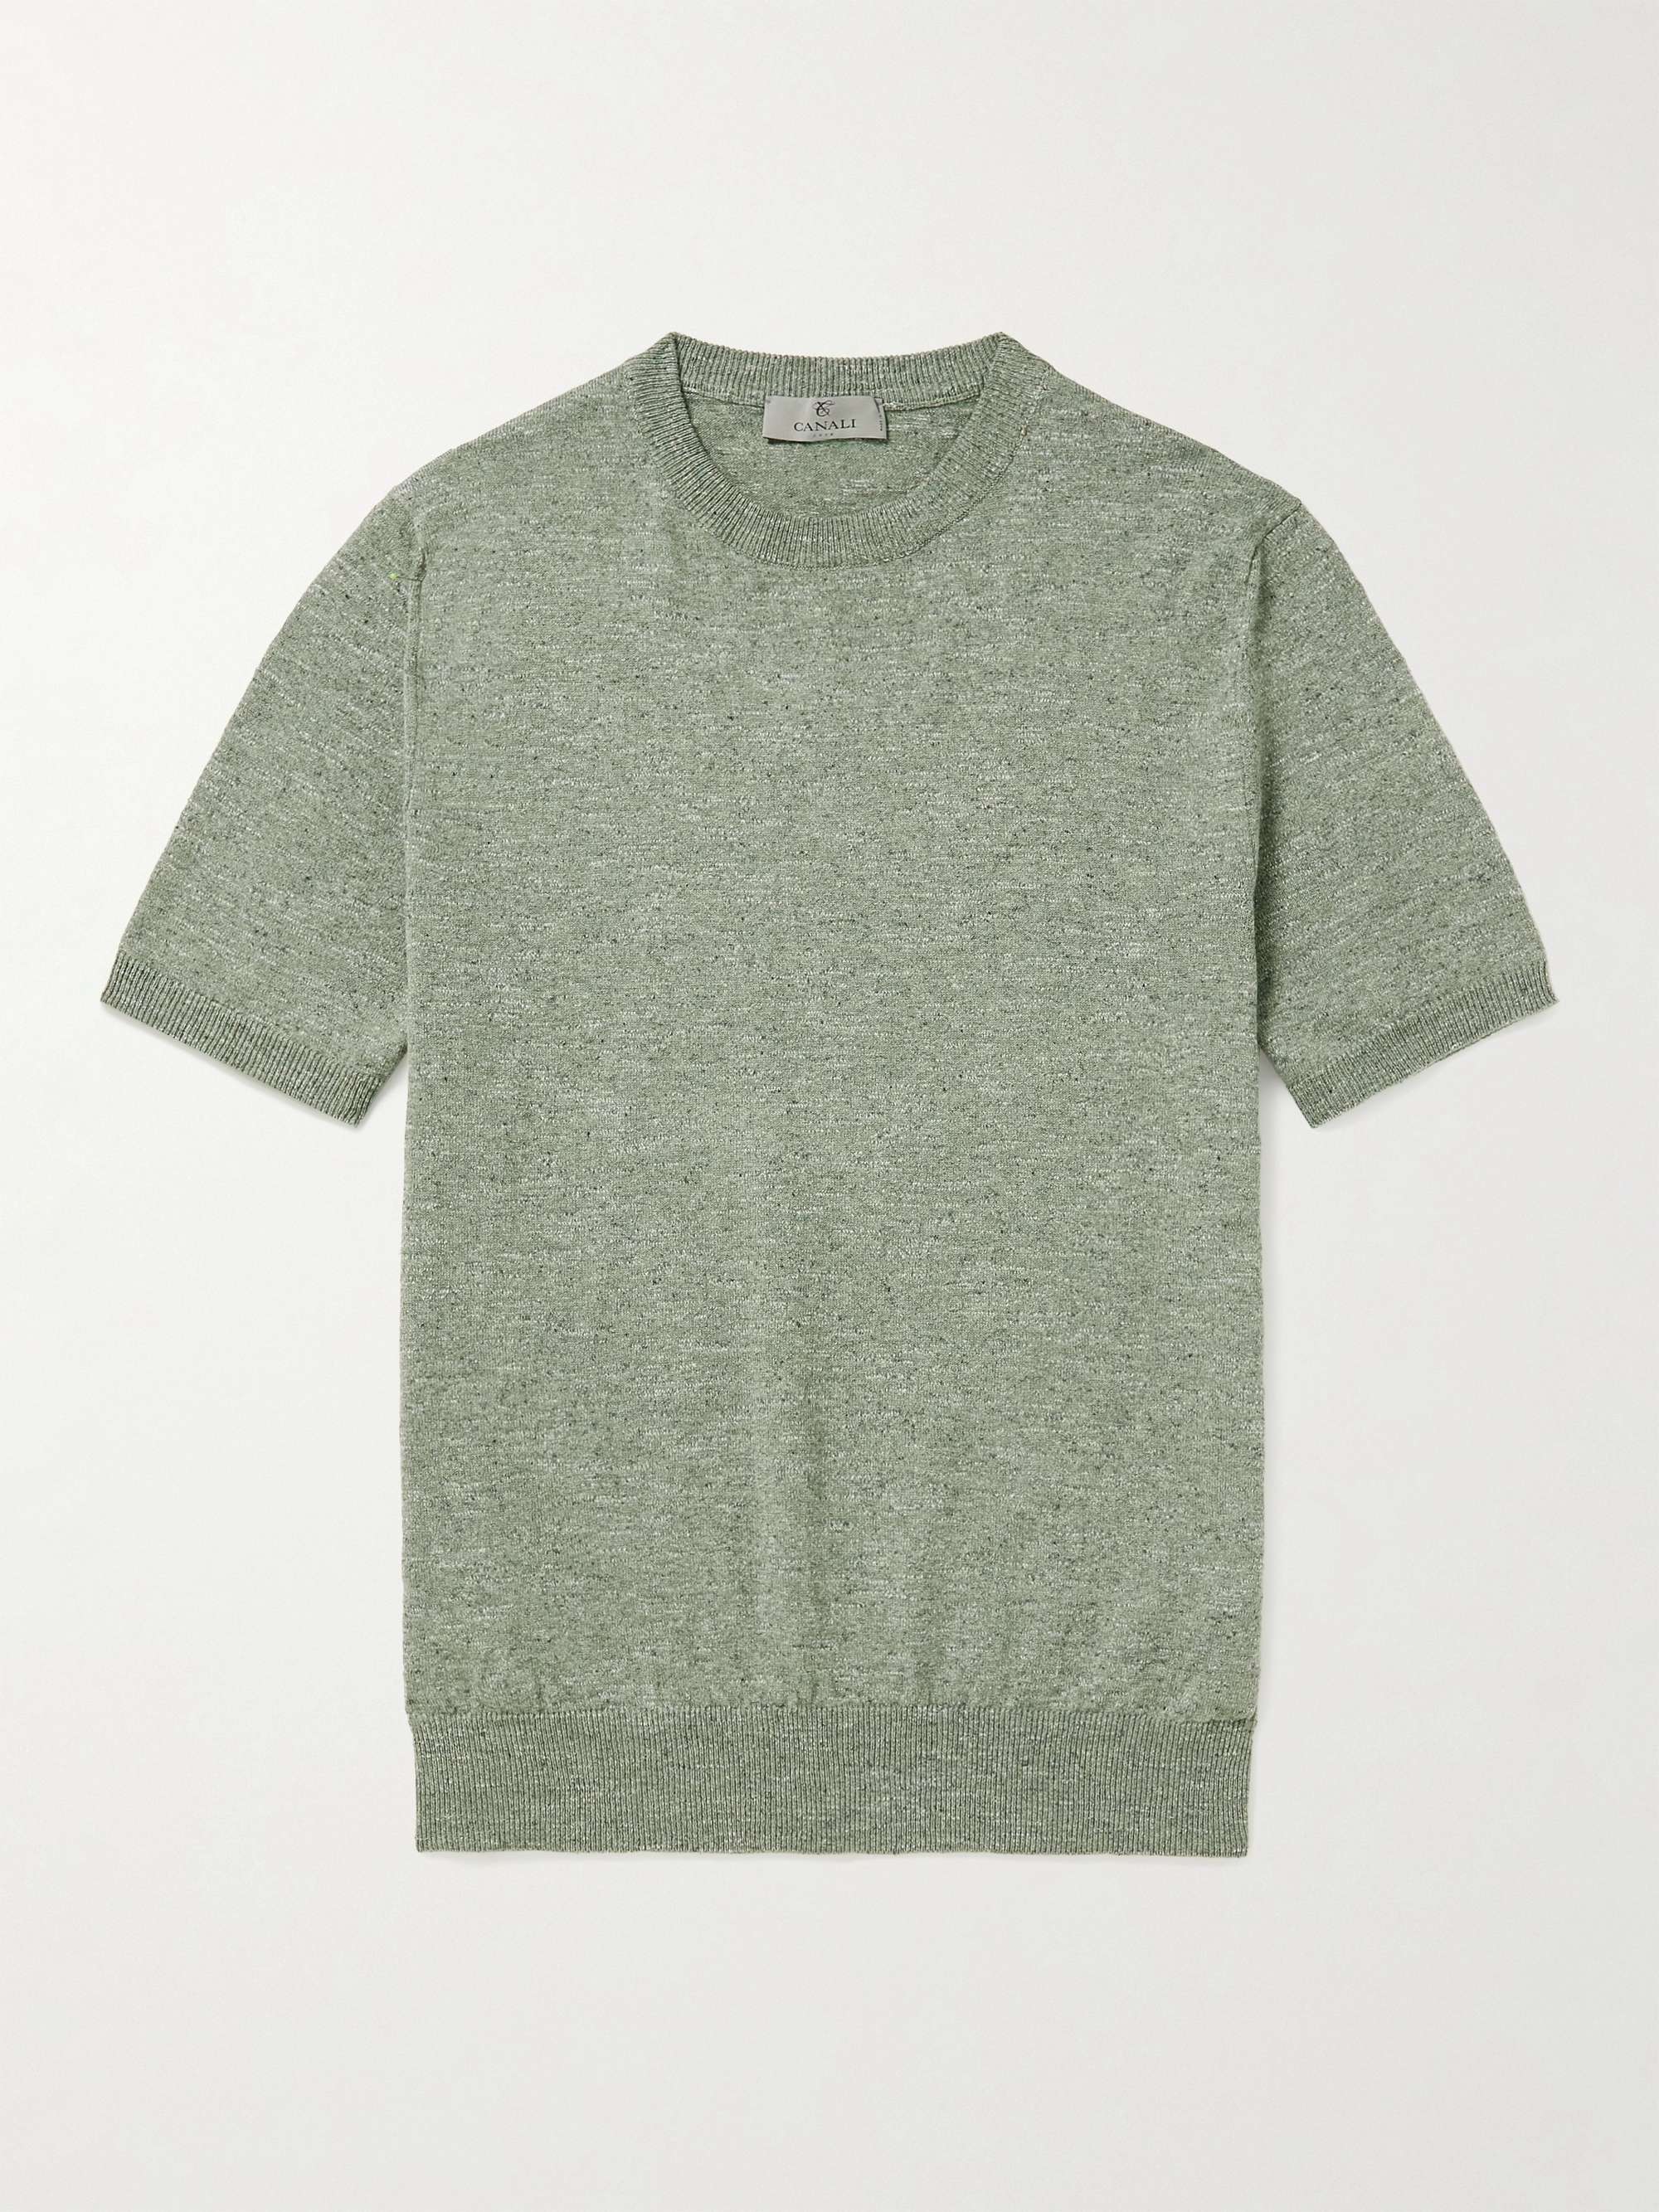 Light green Mélange Cotton and Linen-Blend T-Shirt | CANALI | MR PORTER